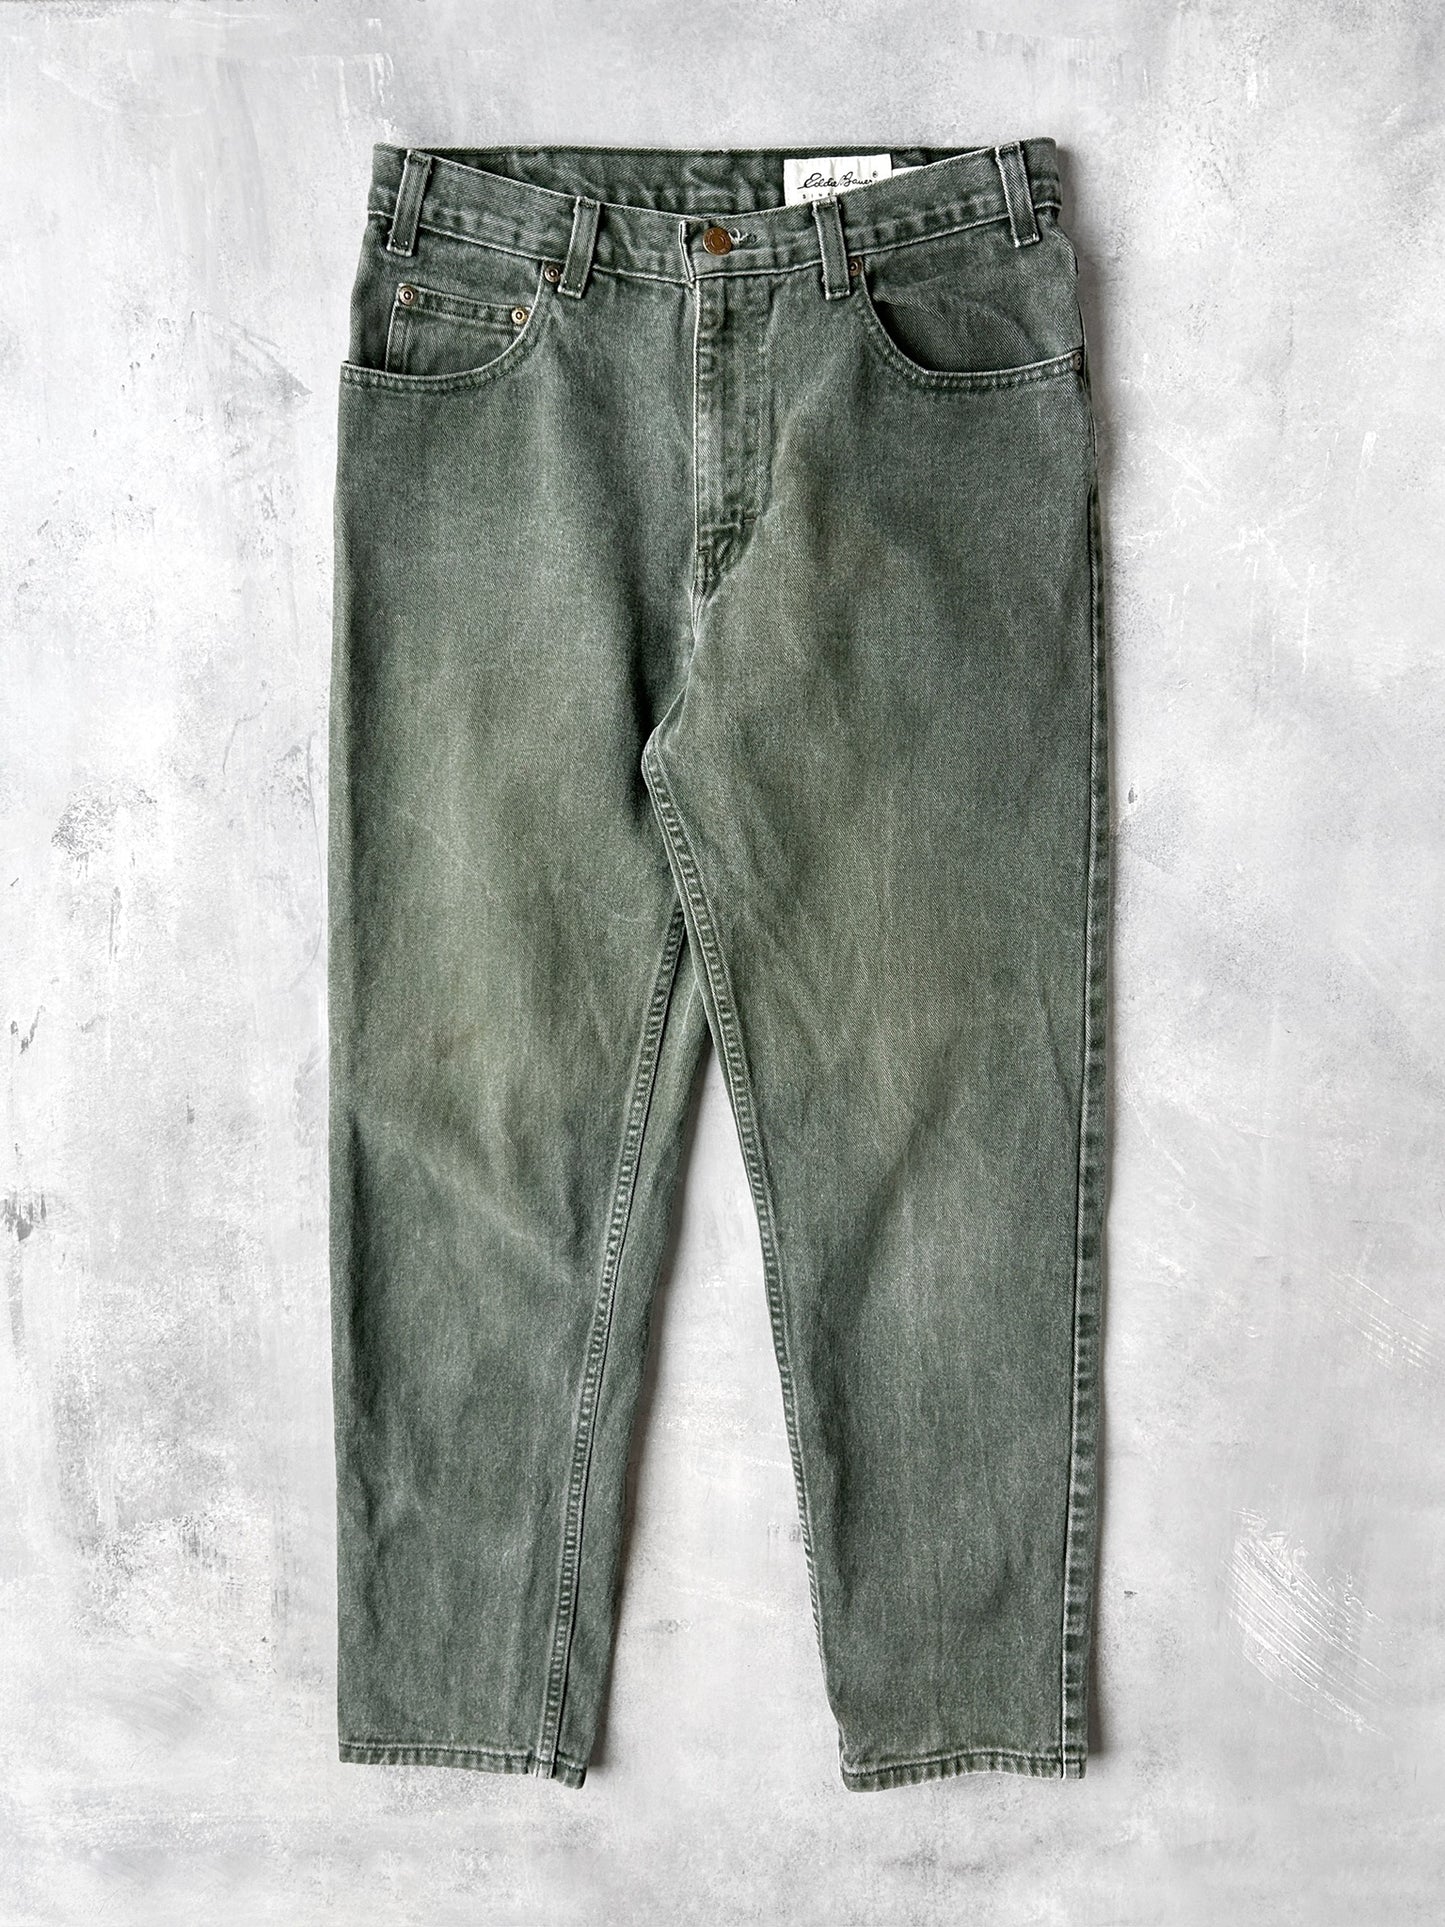 Eddie Bauer Green Jeans 00's - 30x30